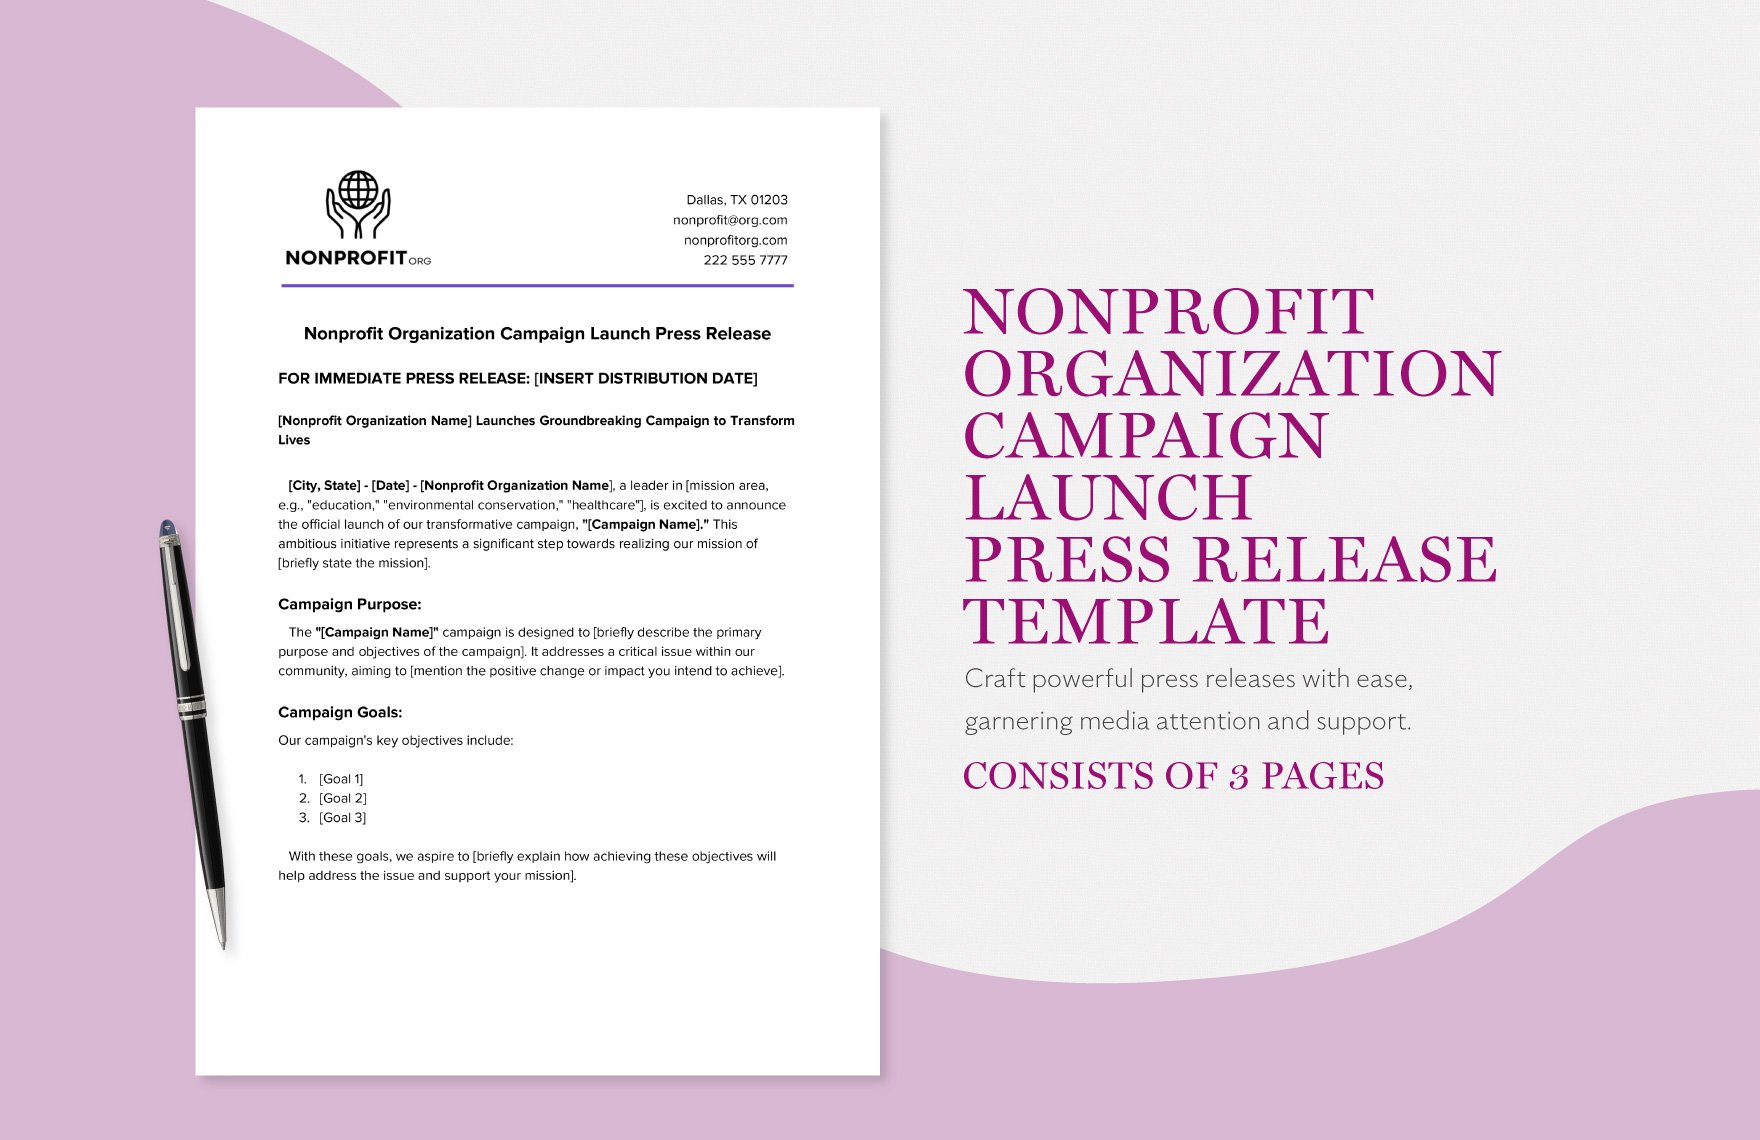 Nonprofit Organization Campaign Launch Press Release Template